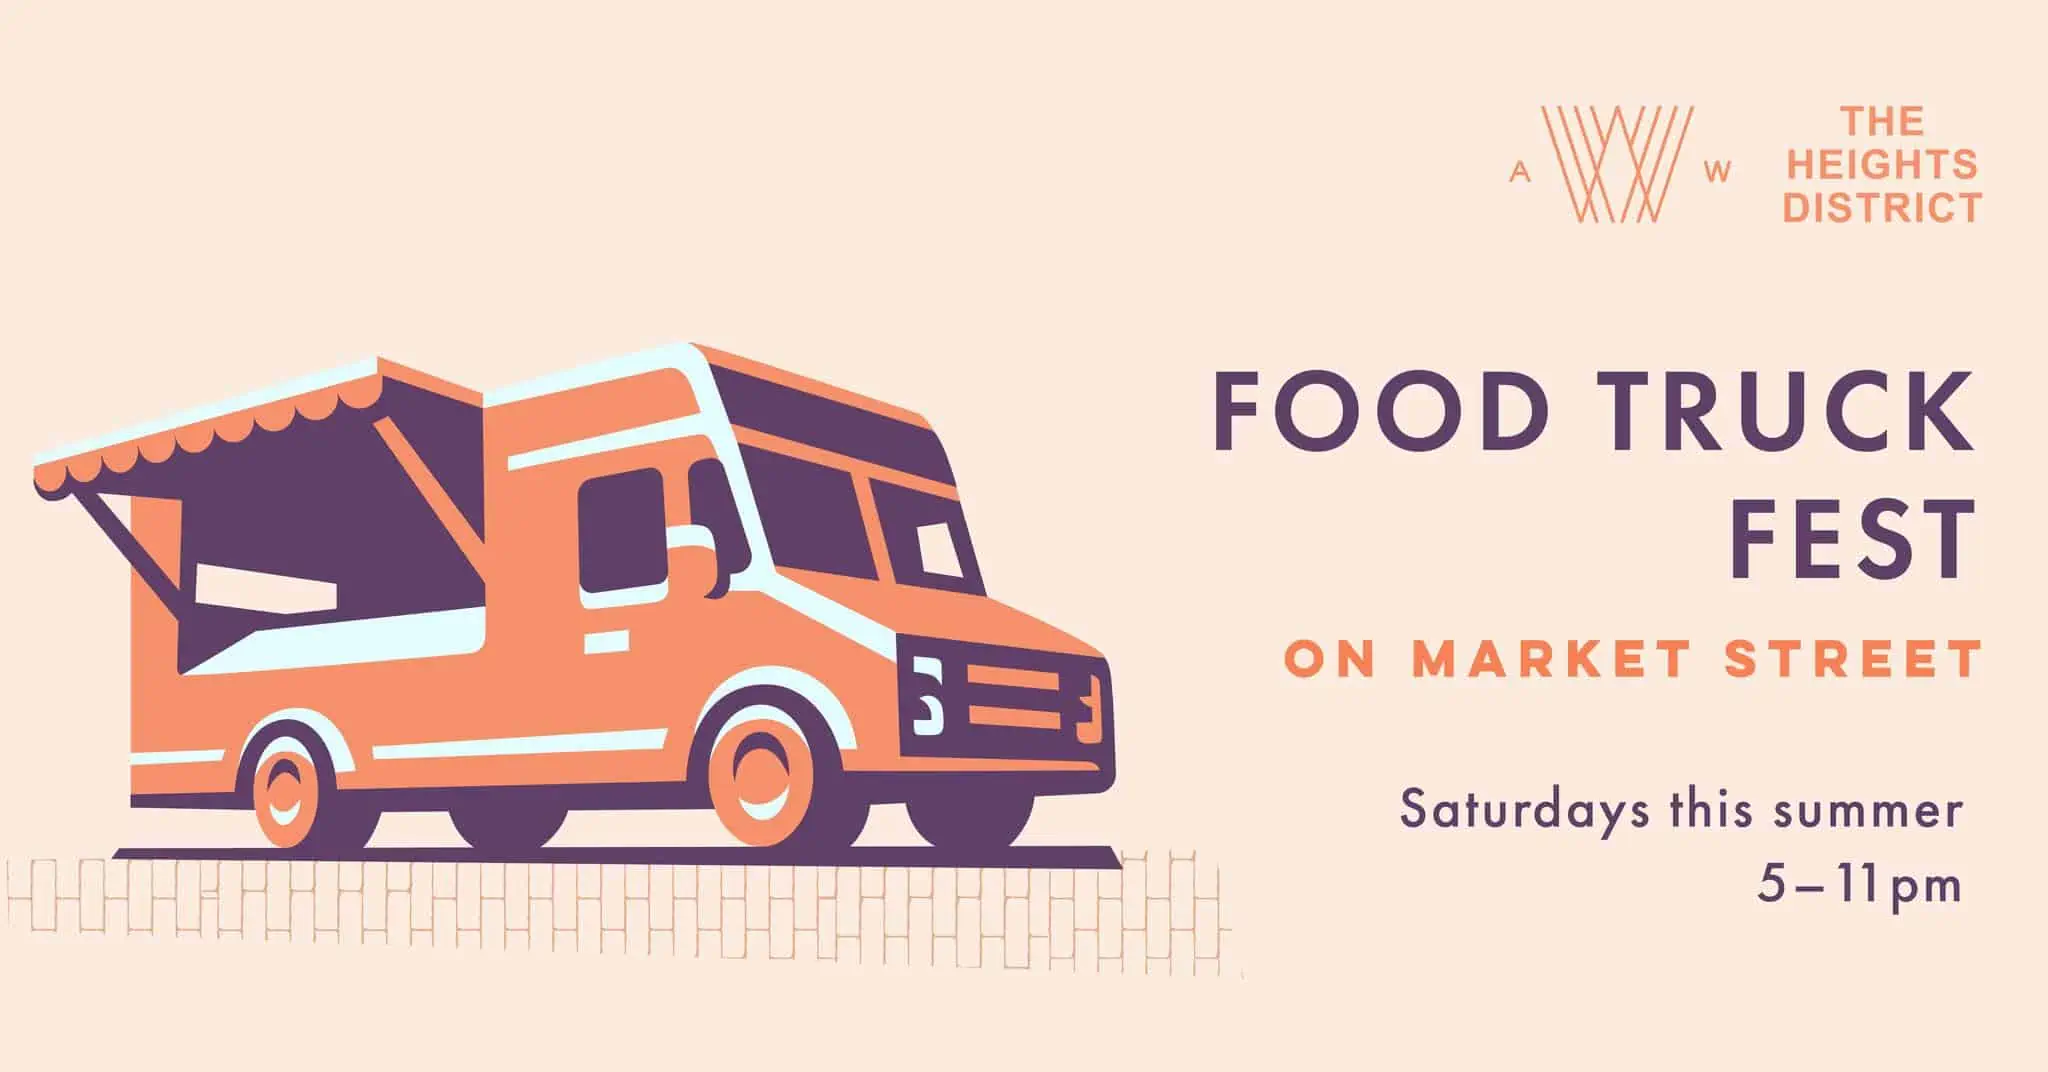 Food Truck Fest on Market Street